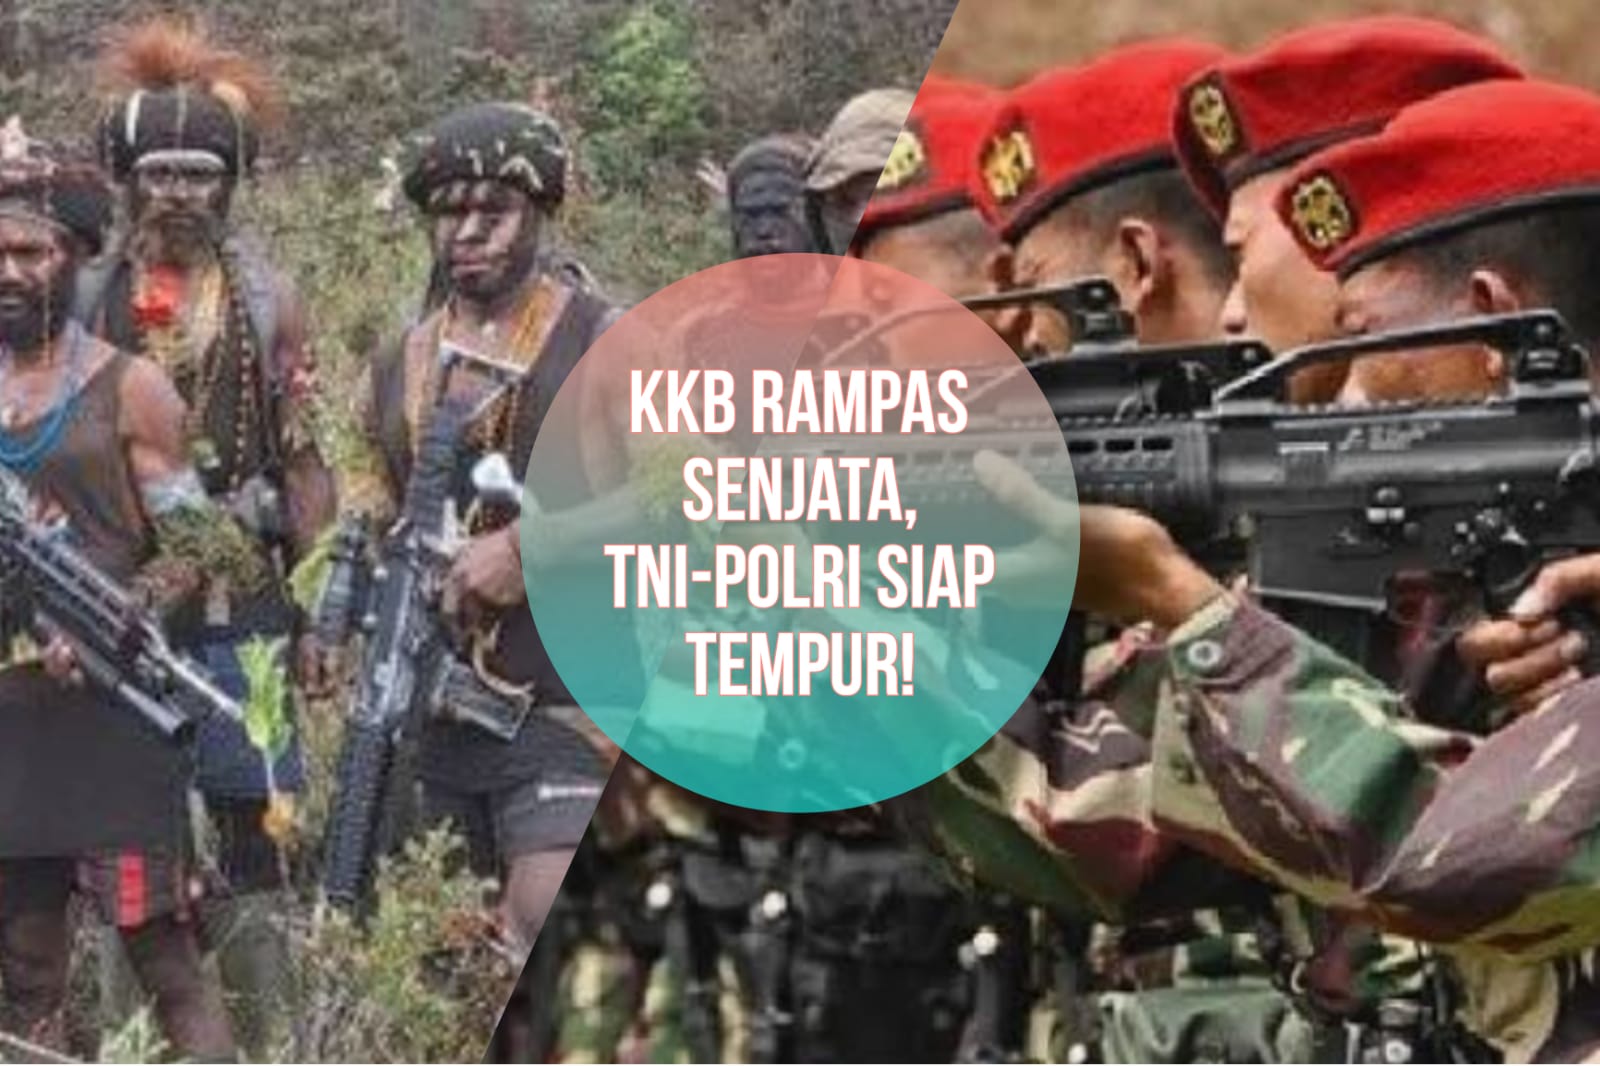 Bahaya! KKB Rampas Senjata Milik Prajurit, TNI-Polri Siap Tempur untuk Rebut Kembali!